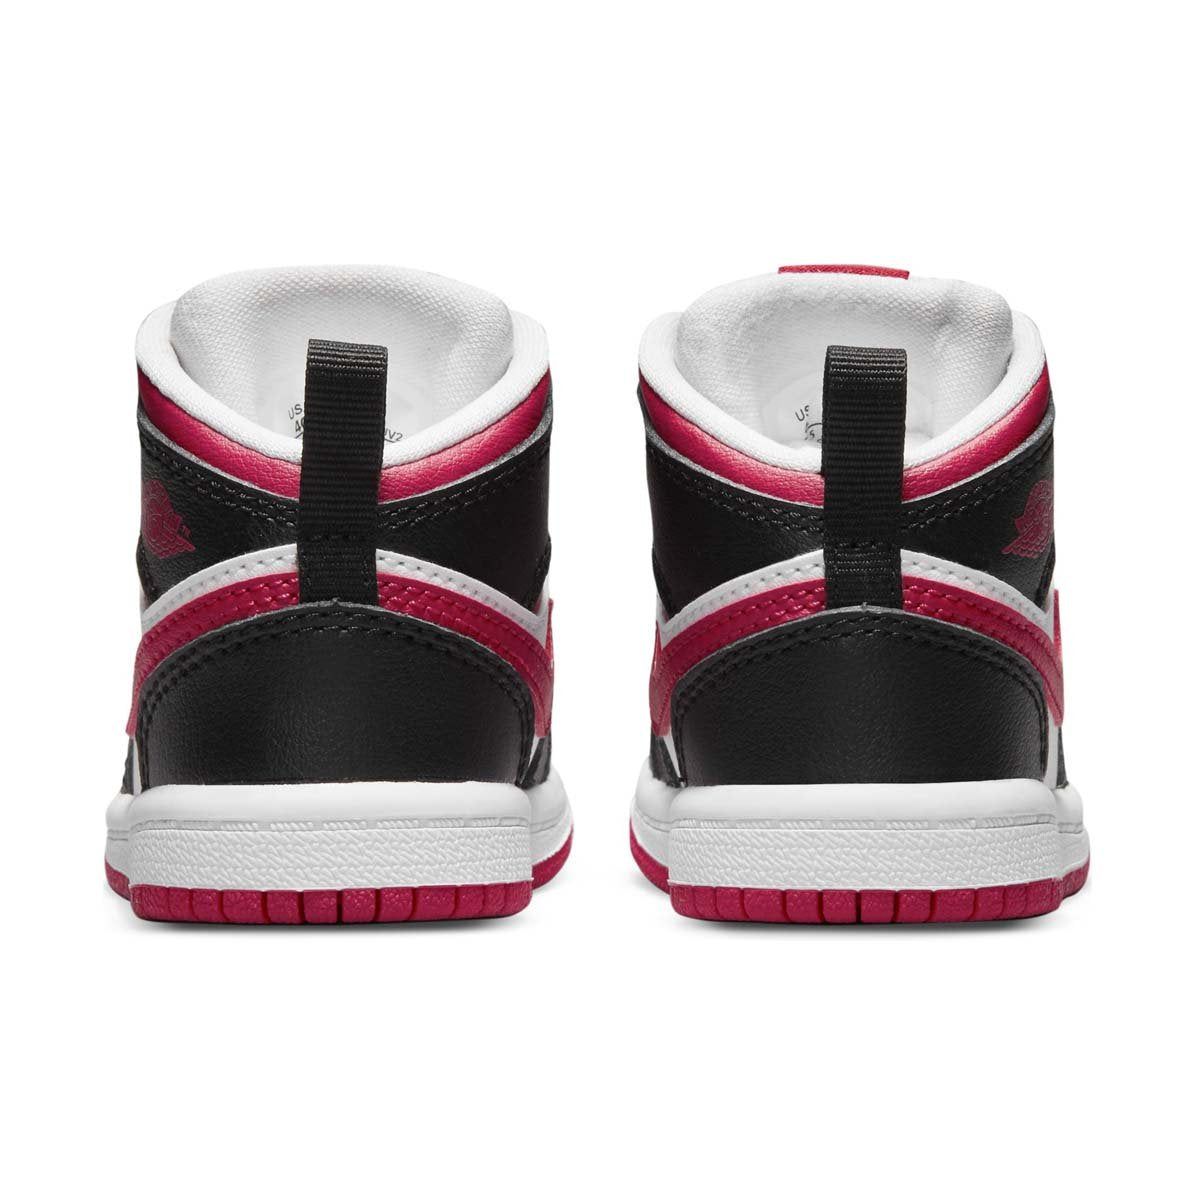 Jordan 1 Mid Infant/Toddler Shoes